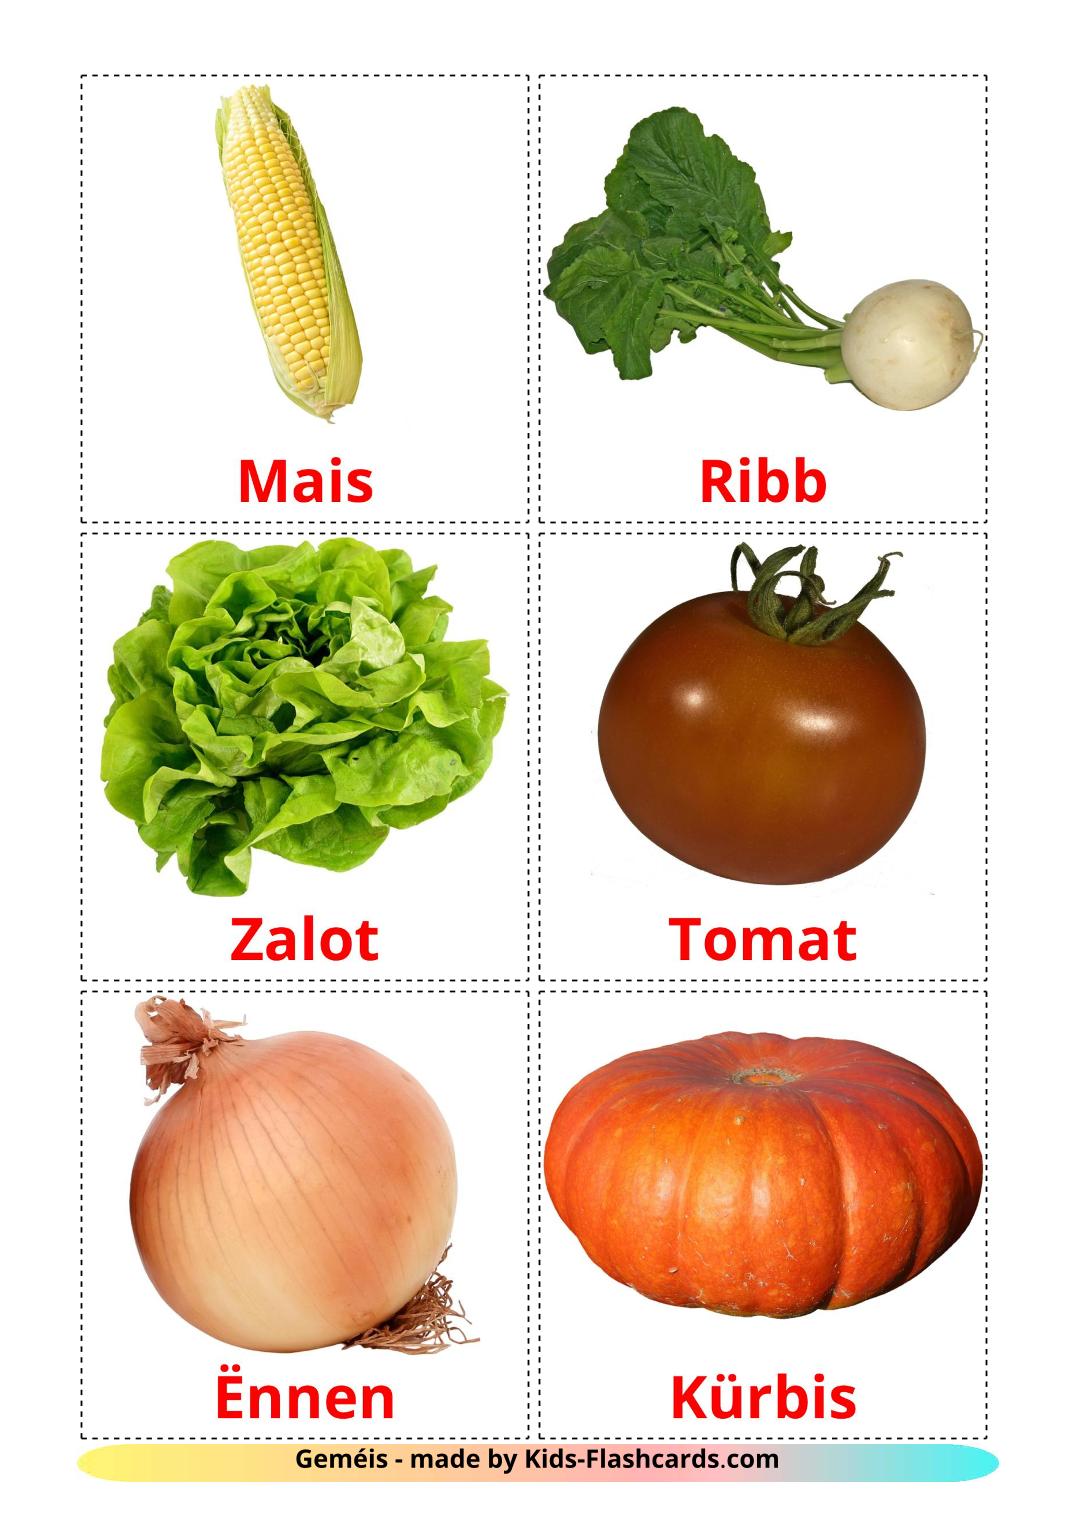 Les Légumes - 29 Flashcards luxembourgeois imprimables gratuitement